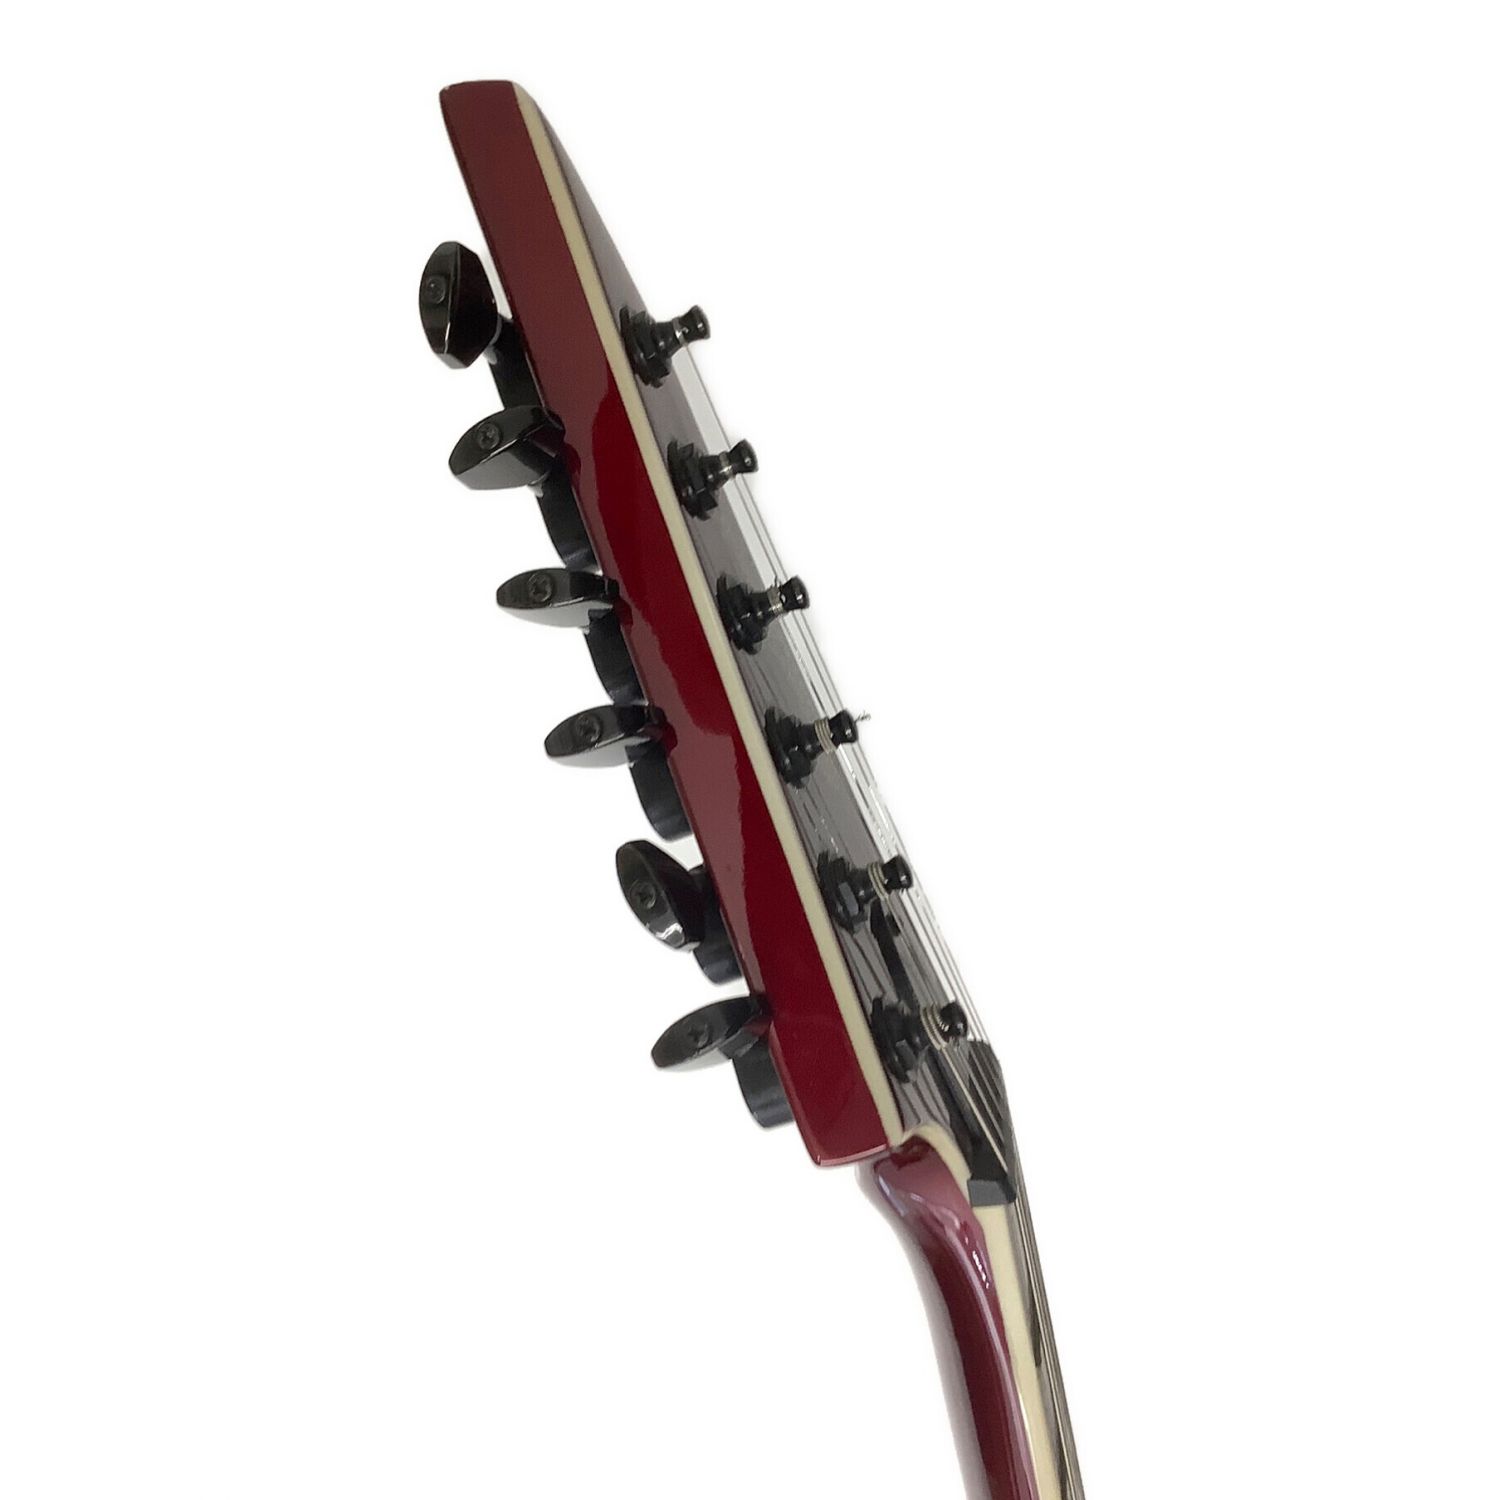 クラシックギター 信濃ギター Shinanoギター No.73 手工品 岩窪精造 